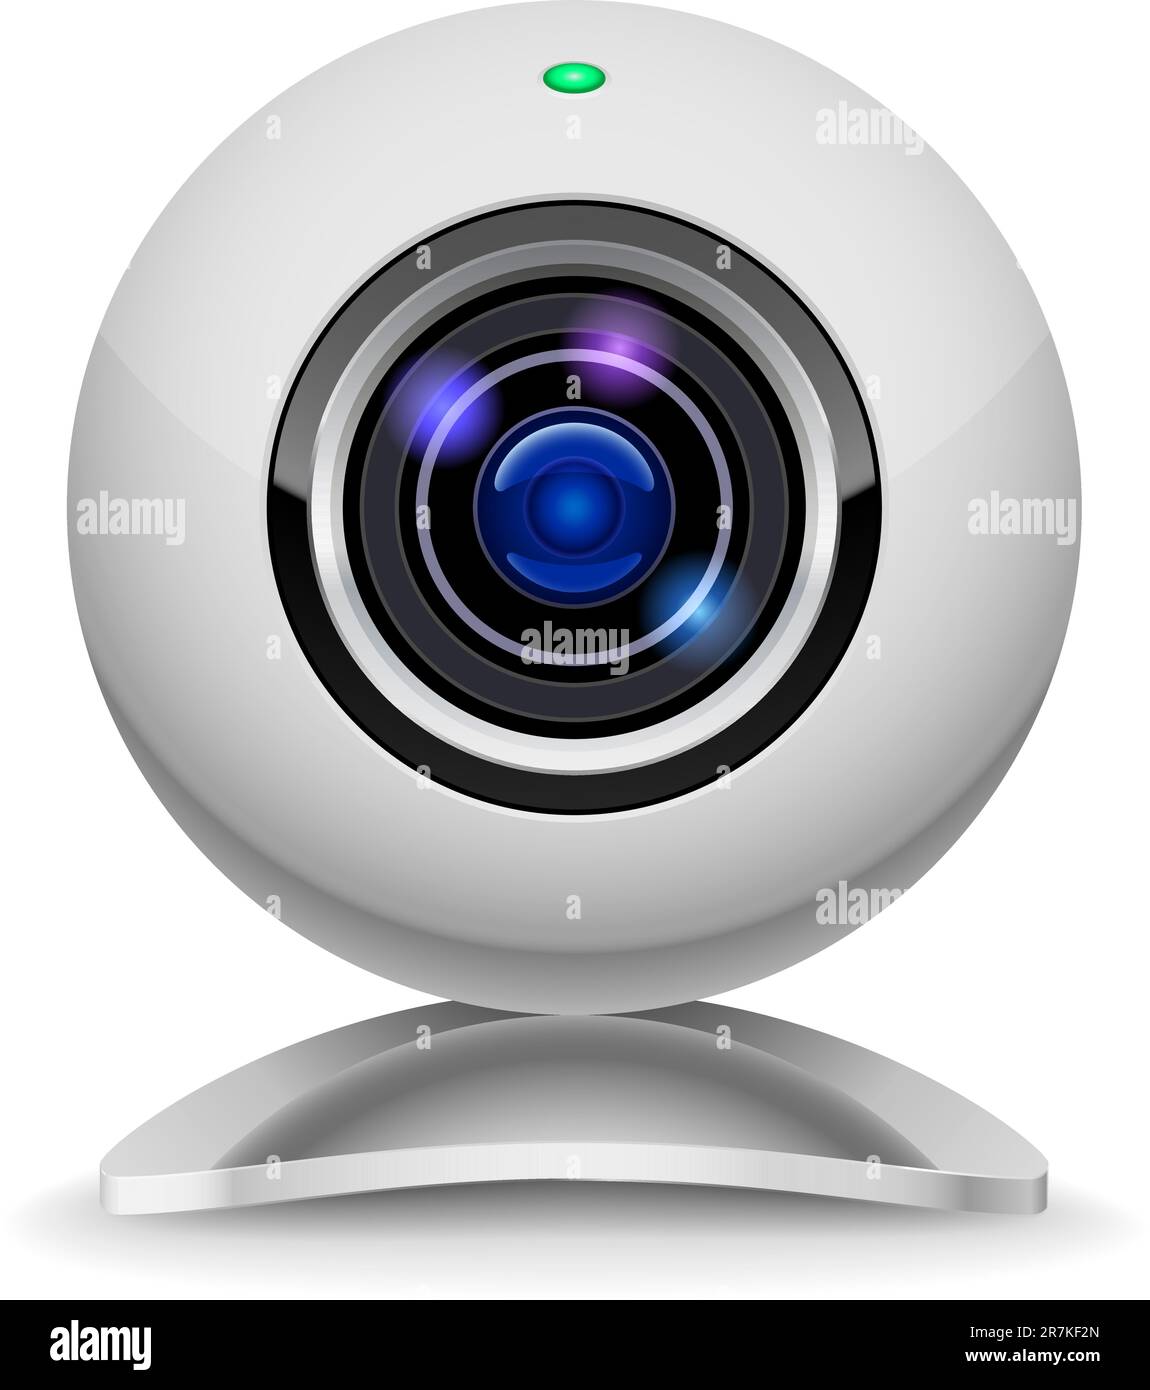 Webcam blanc réaliste. Illustration sur fond blanc Illustration de Vecteur